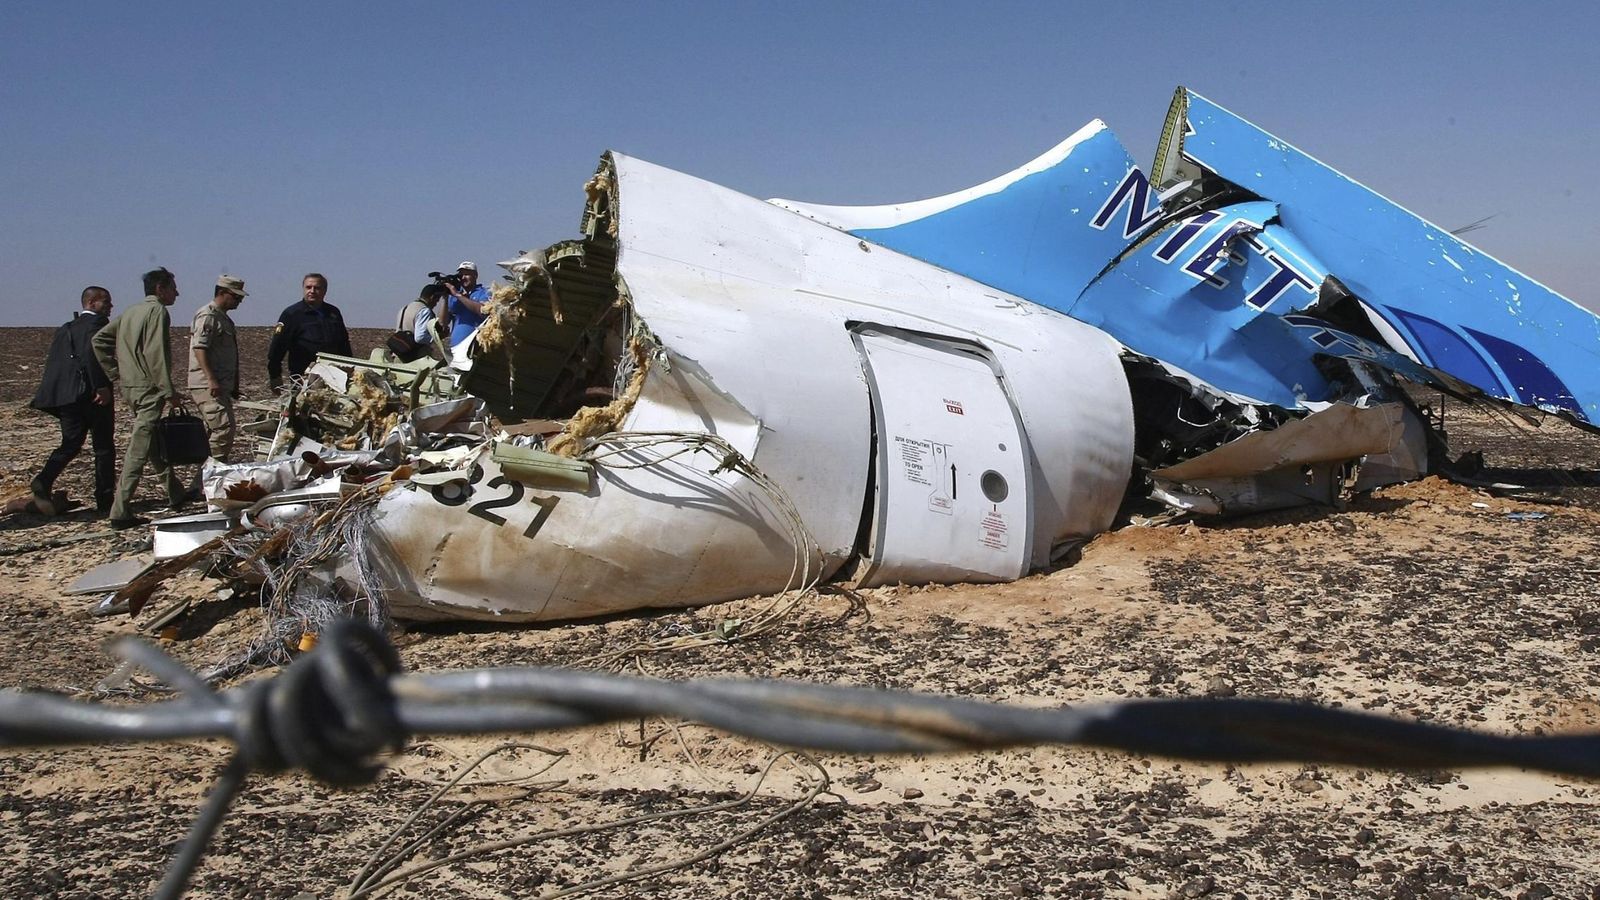 Foto: Parte del fuselaje del avión siniestrado en el Sinaí (Egipto) en el mes de octubre. (Efe)